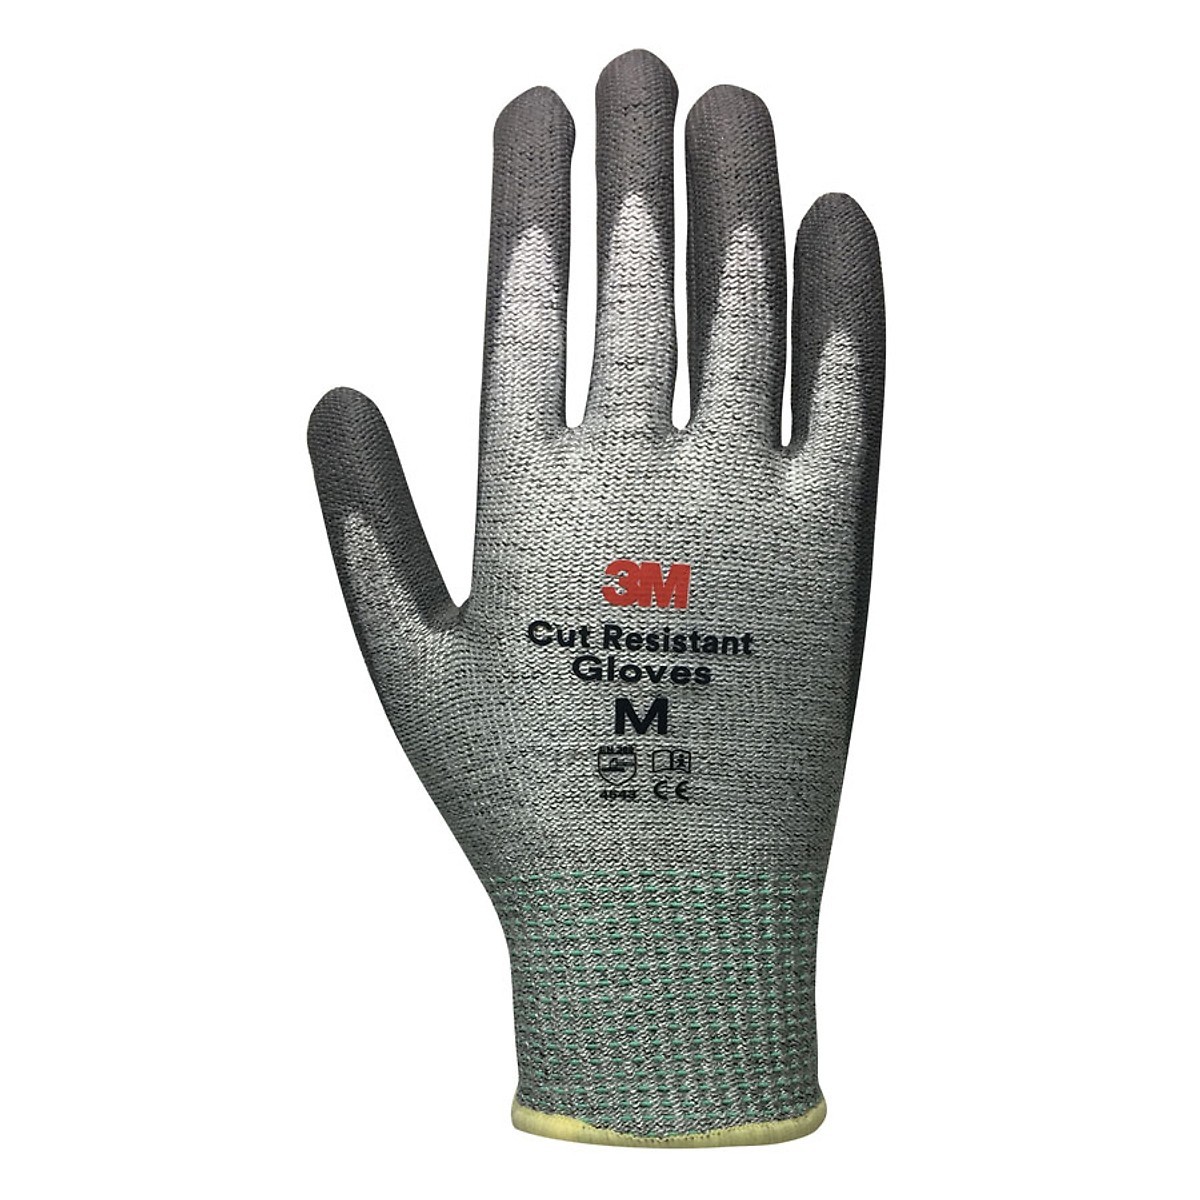 3M Cut Resistant Gloves (ATG-3M-LV1-M)